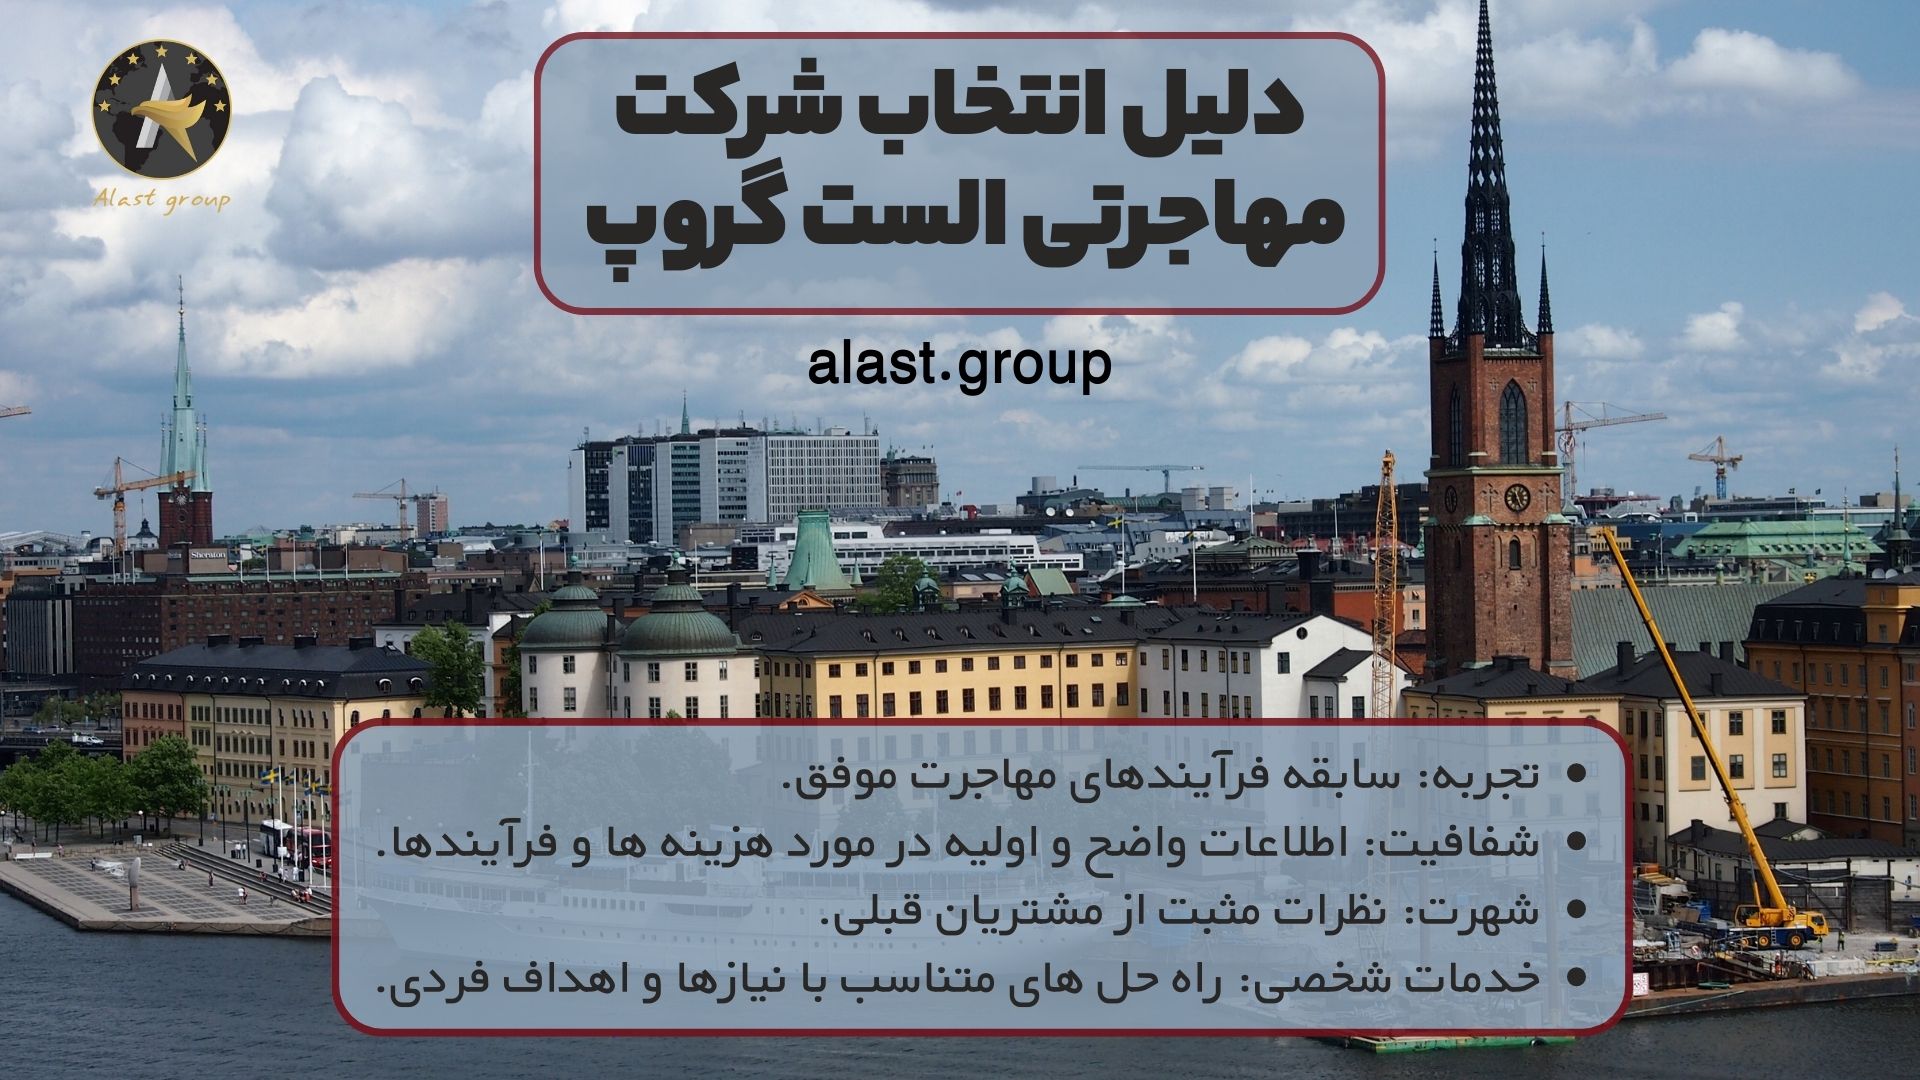 دلیل انتخاب شرکت مهاجرتی الست گروپ به عنوان بهترین موسسه مهاجرتی به سوئد